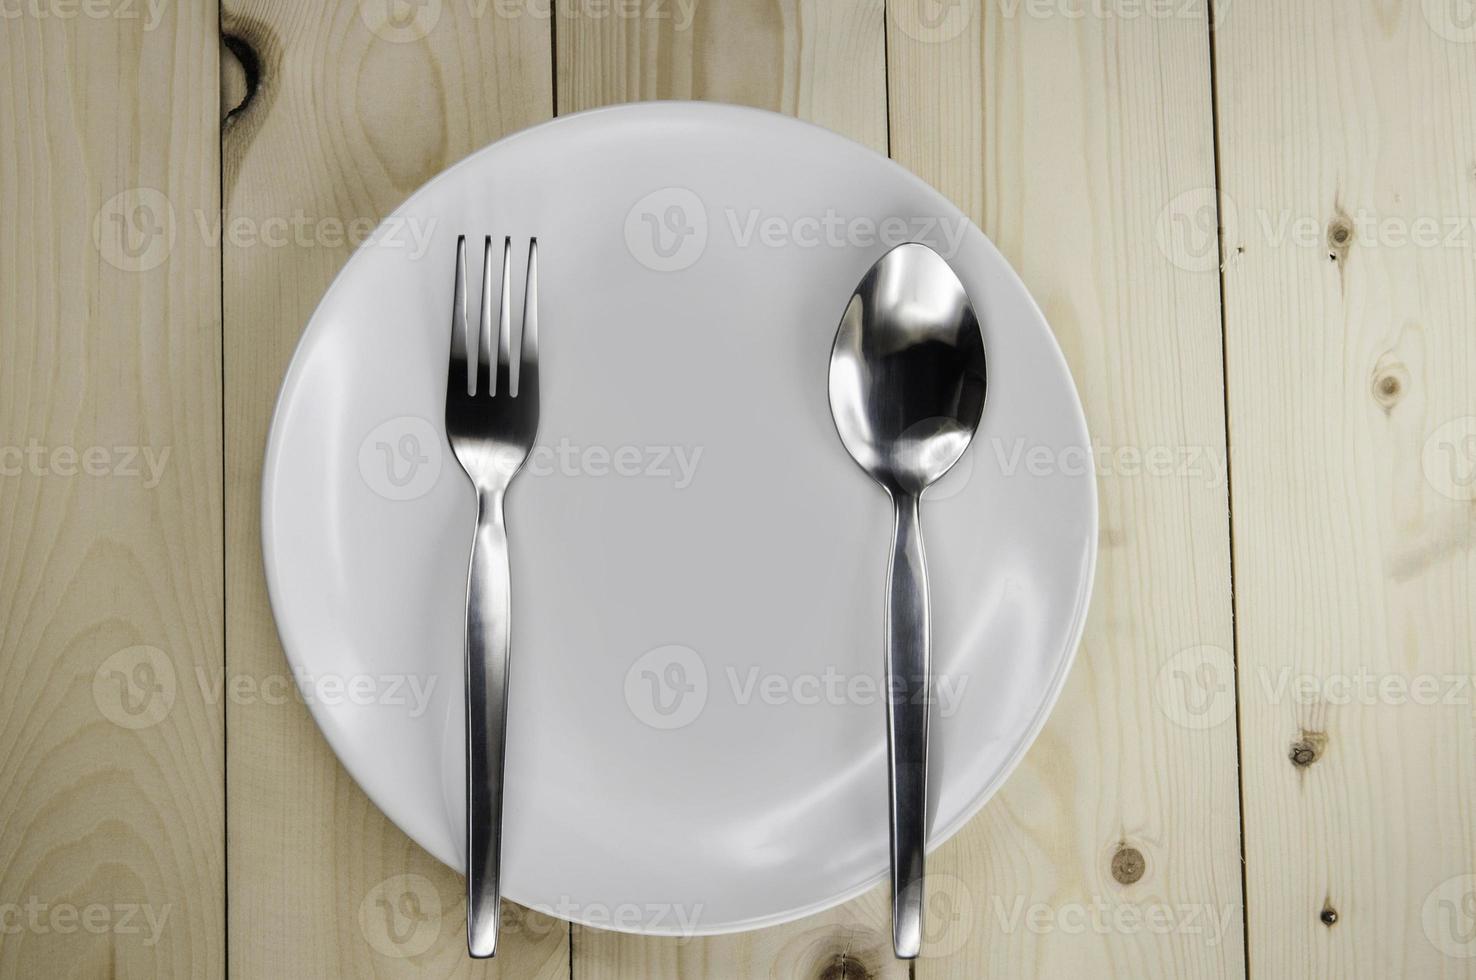 prato e talheres na mesa de madeira foto